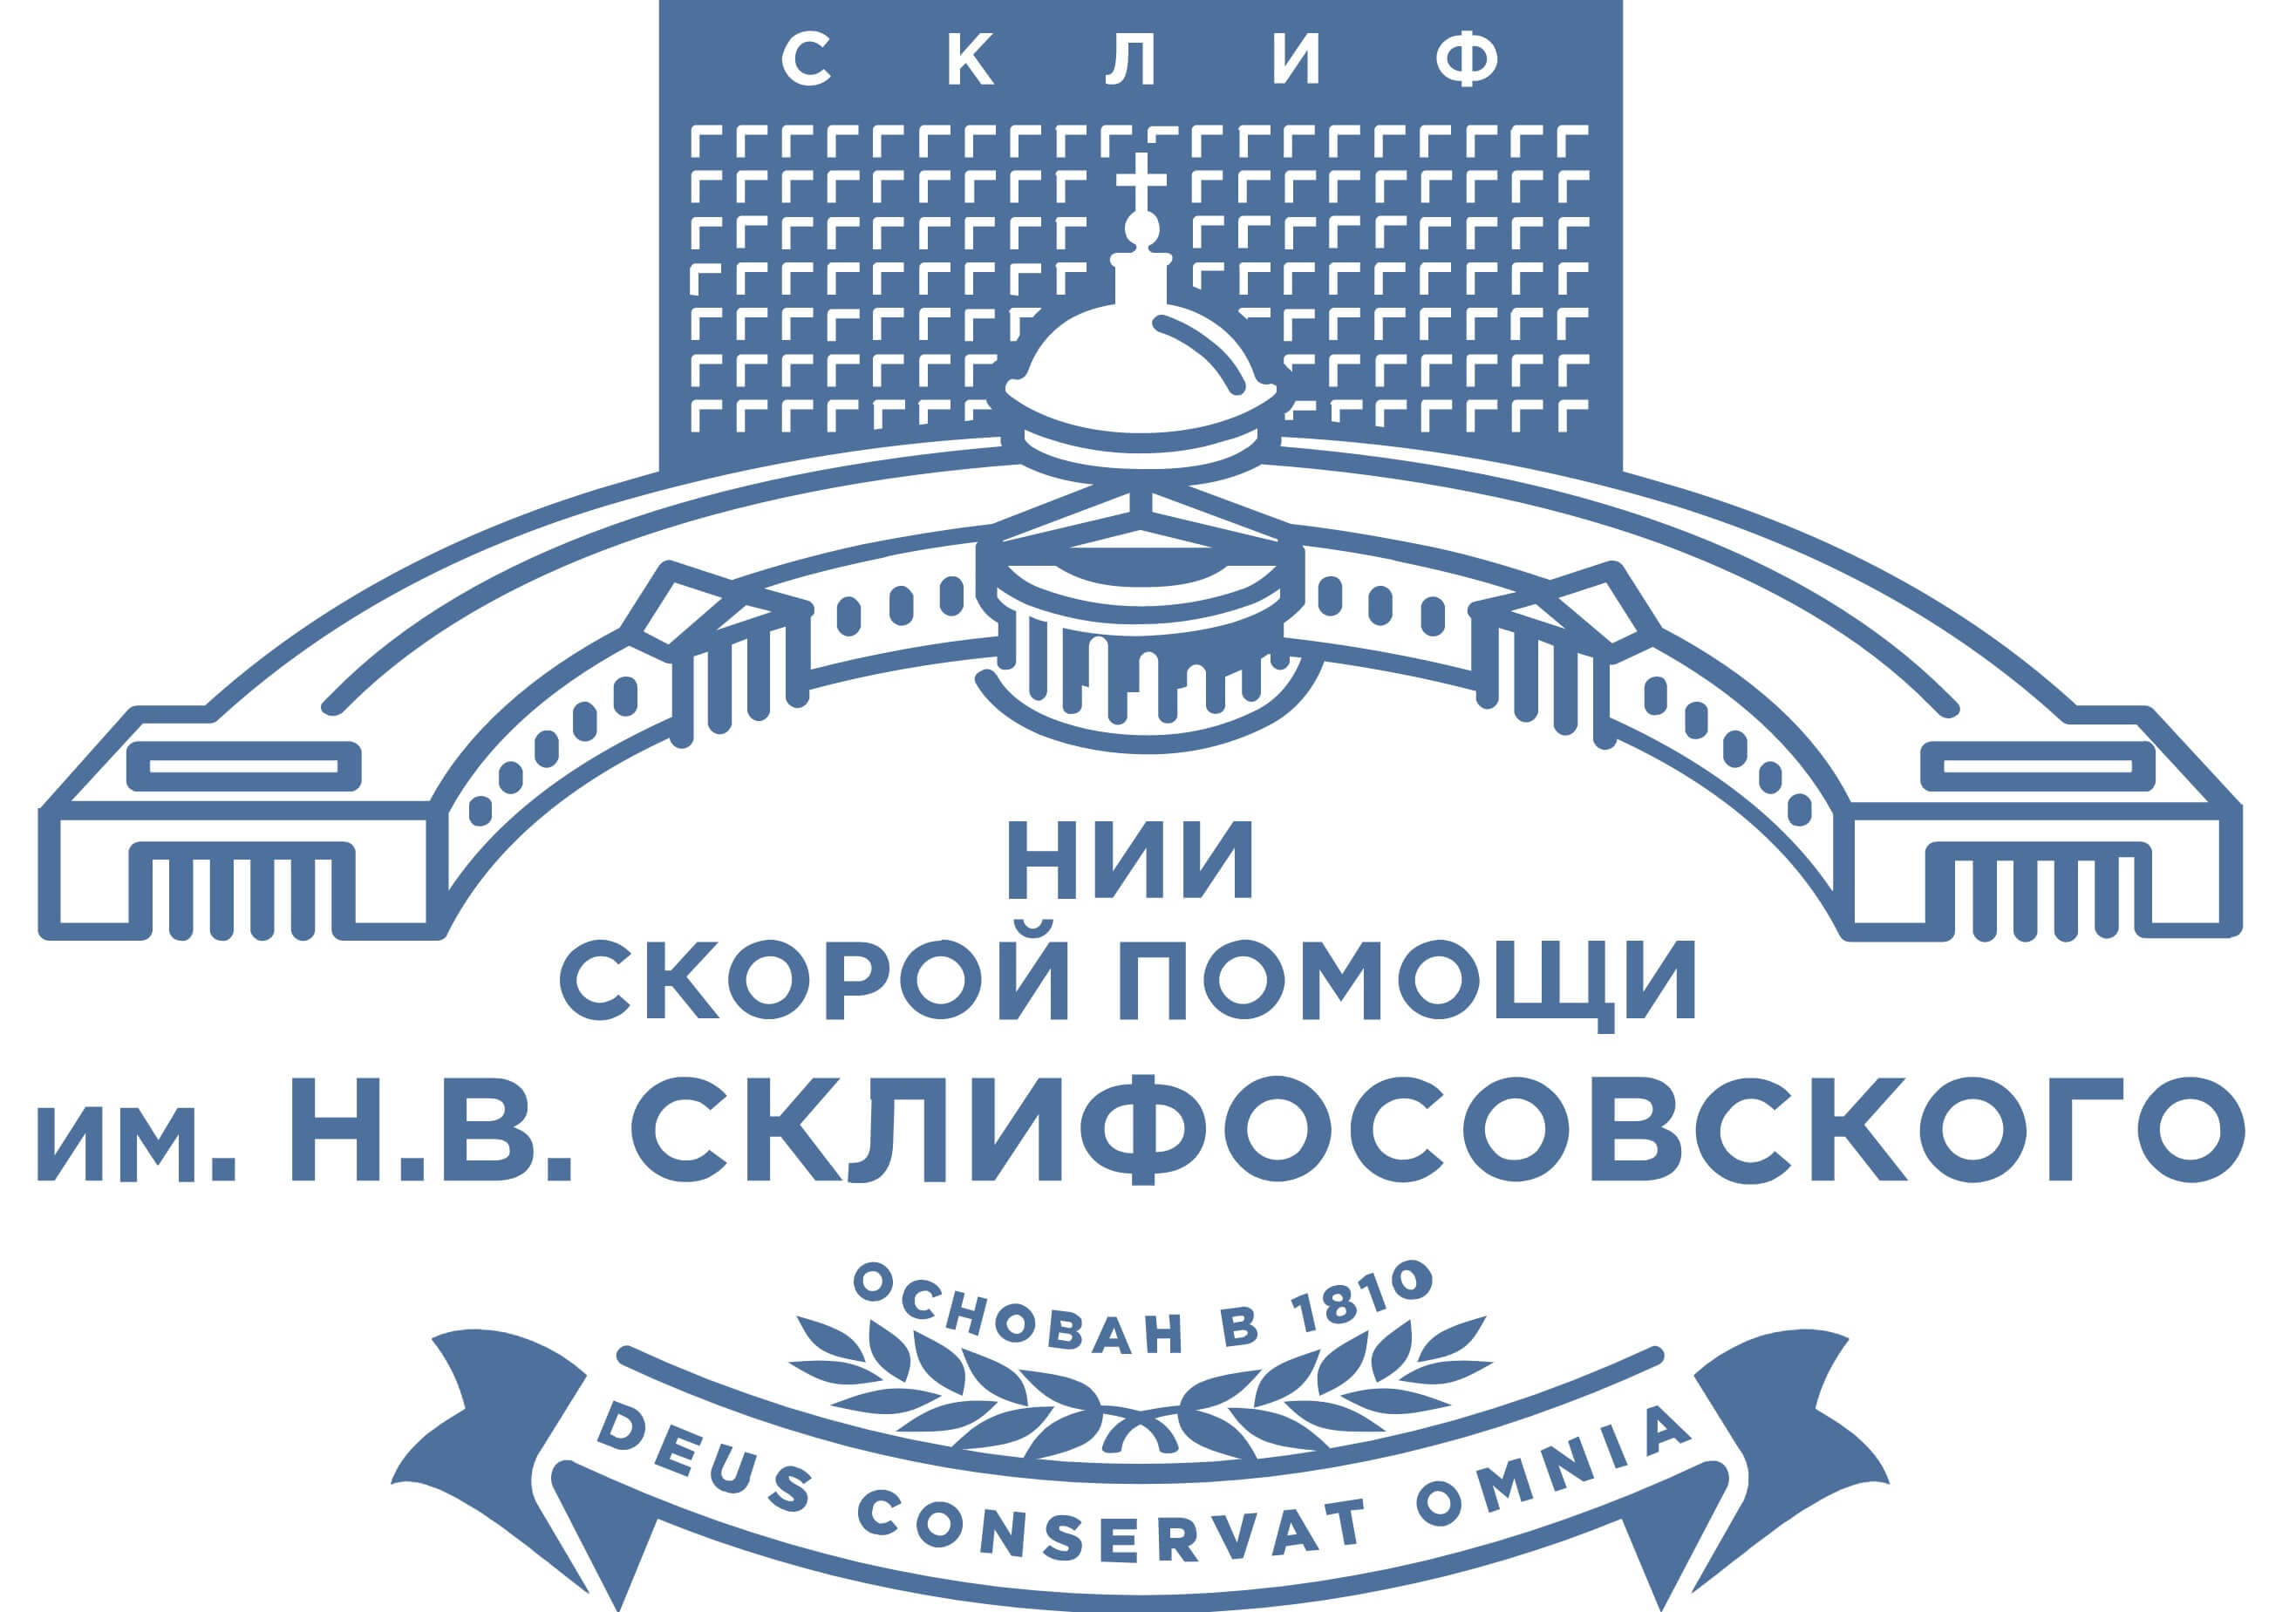 институт имени склифосовского в москве официальный сайт